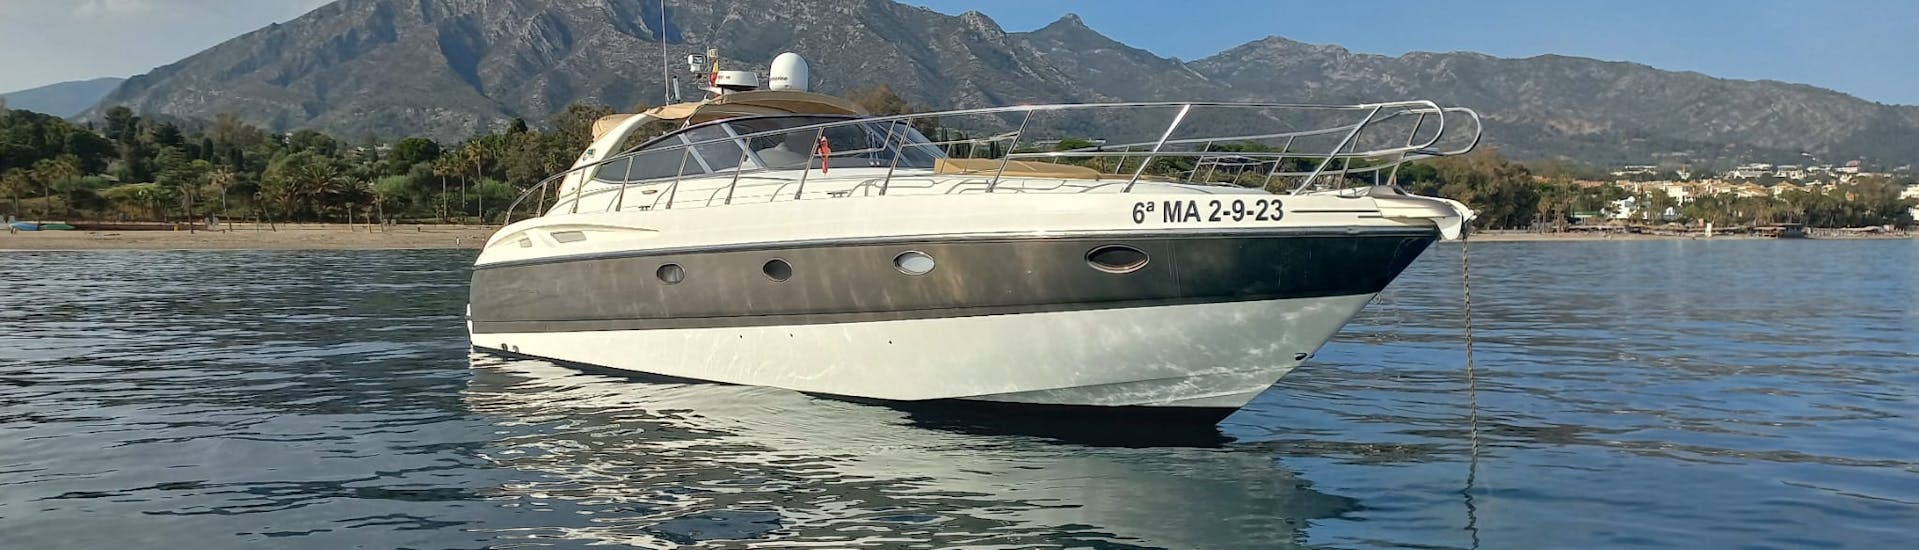 Foto de un barco de Royal Catamarán Marbella durante un paseo privado.